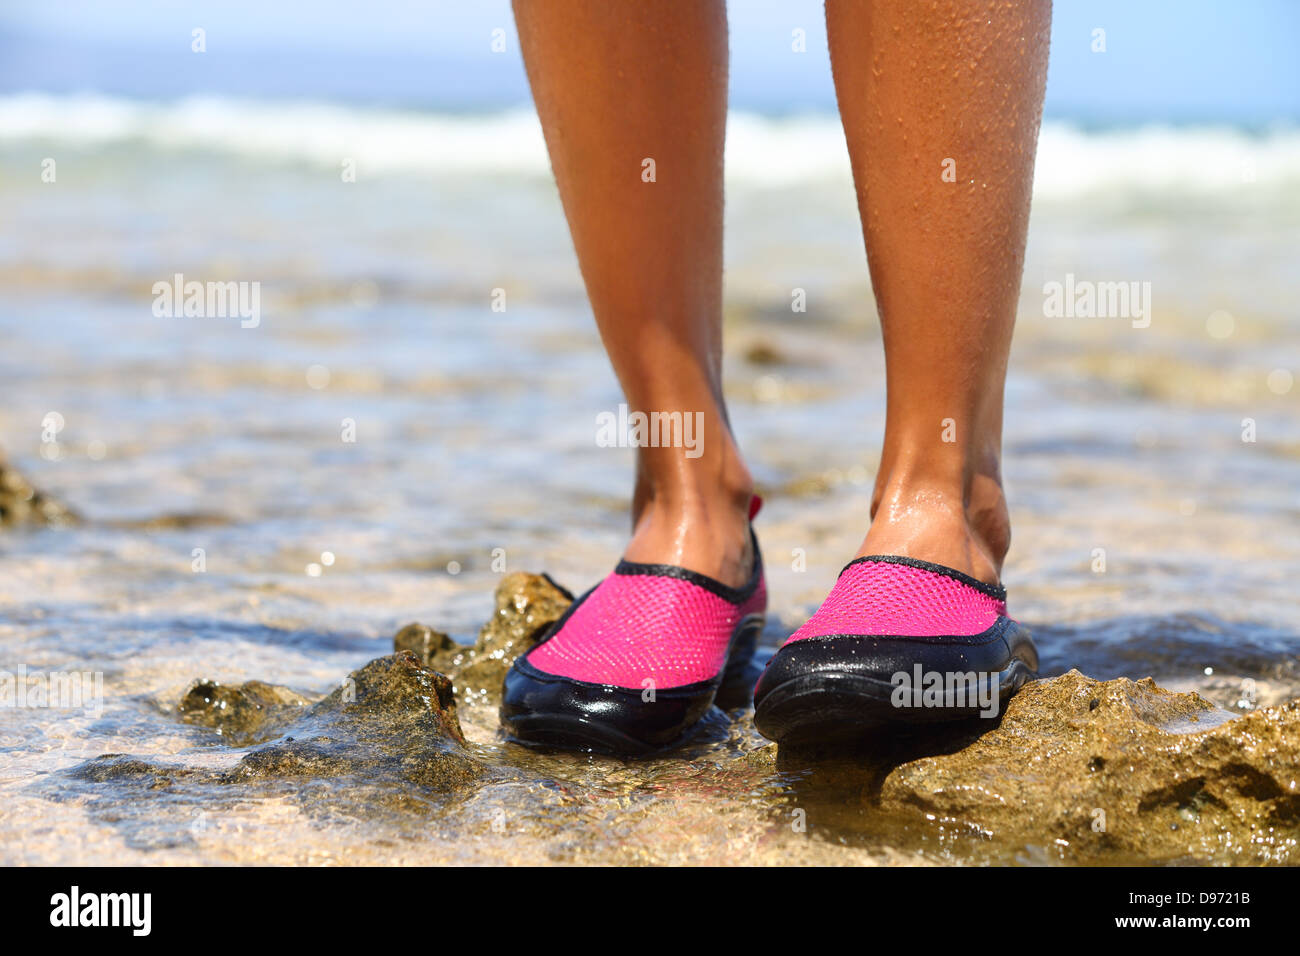 Wasser Schuhe/Schwimmen Schuh in Rosa Neopren auf Felsen im Wasser am  Strand. Closeup detail an den Füßen einer Frau tragen leuchtend  pinkfarbenen Neopren wasser Schuh Stockfotografie - Alamy